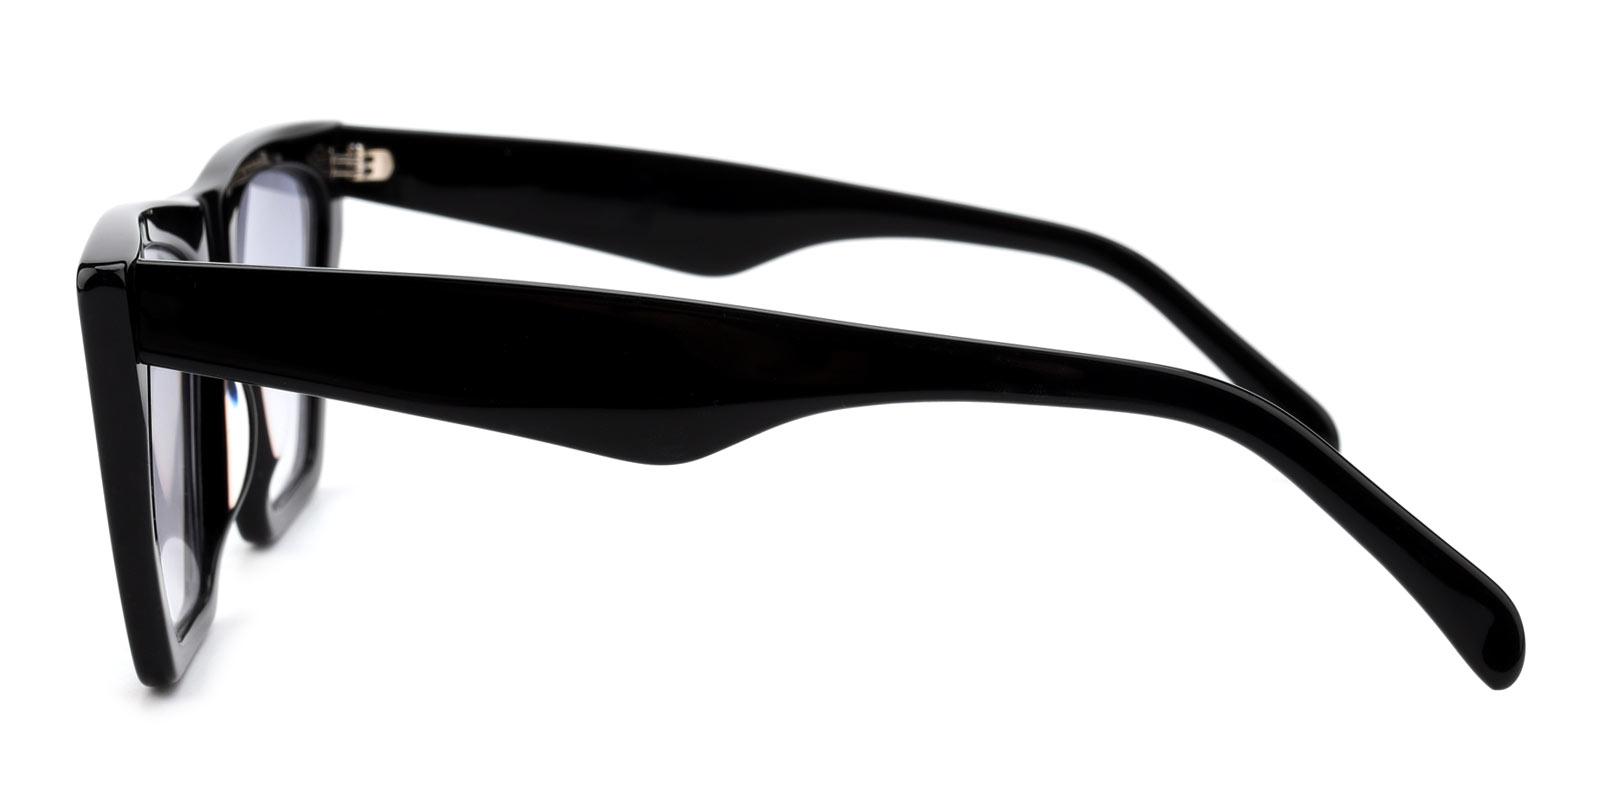 Alva-Black-Cat-Acetate-Sunglasses-detail